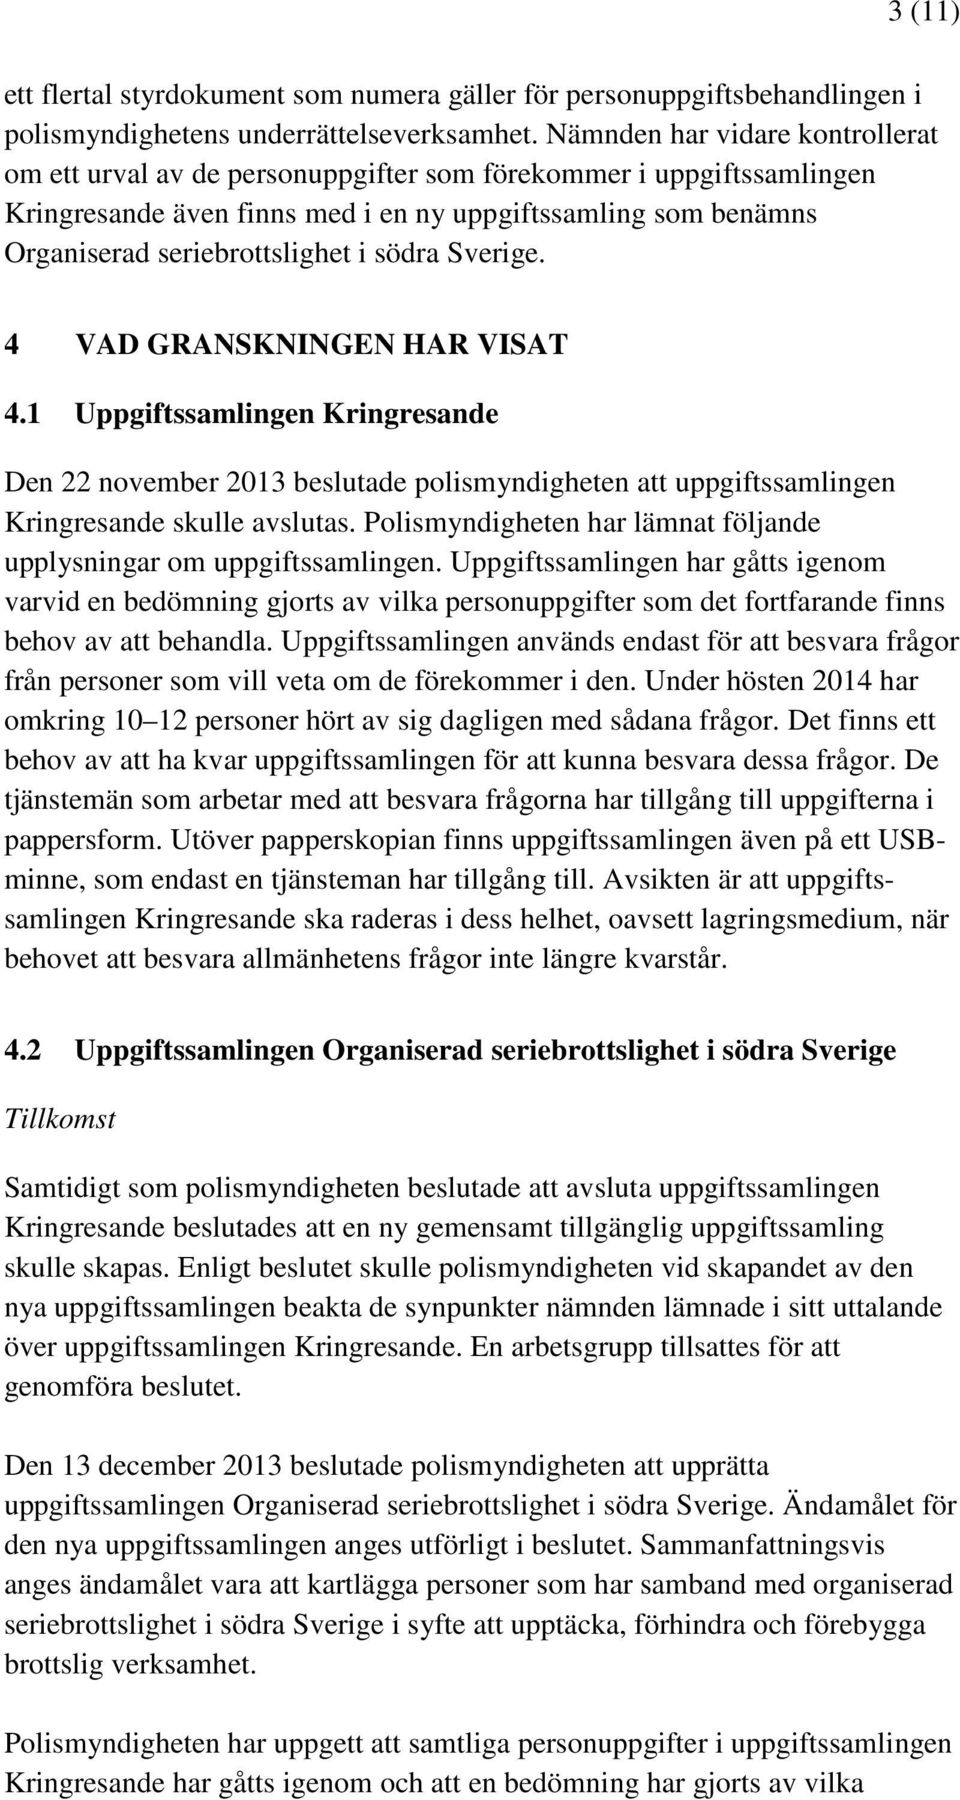 södra Sverige. 4 VAD GRANSKNINGEN HAR VISAT 4.1 Uppgiftssamlingen Kringresande Den 22 november 2013 beslutade polismyndigheten att uppgiftssamlingen Kringresande skulle avslutas.